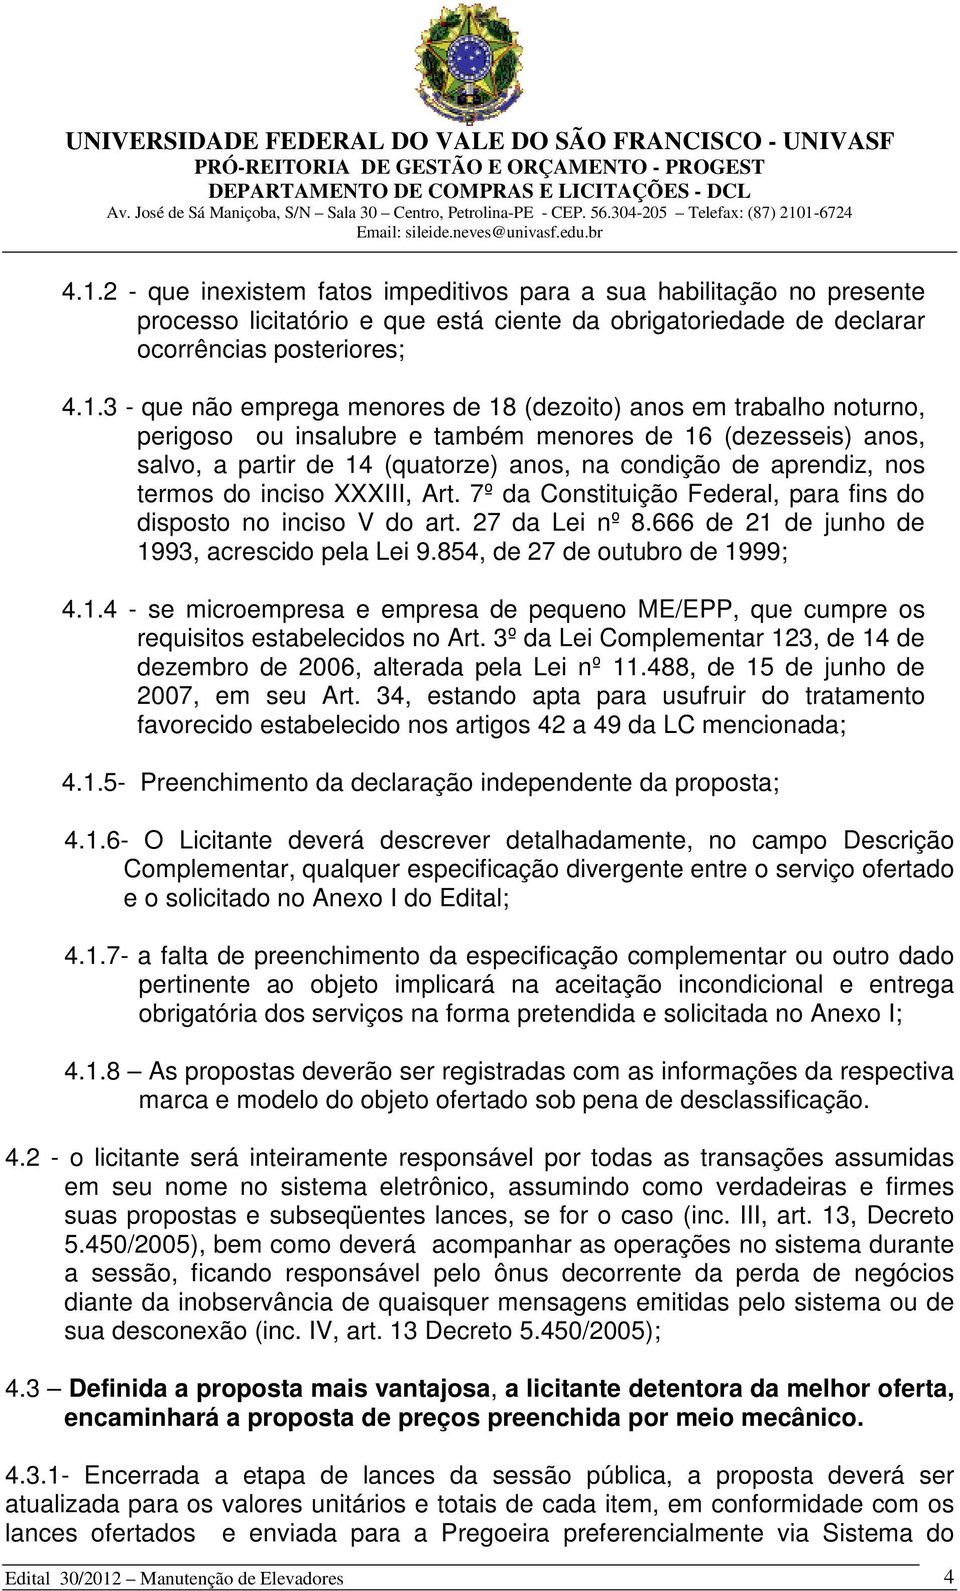 XXXIII, Art. 7º da Constituição Federal, para fins do disposto no inciso V do art. 27 da Lei nº 8.666 de 21 